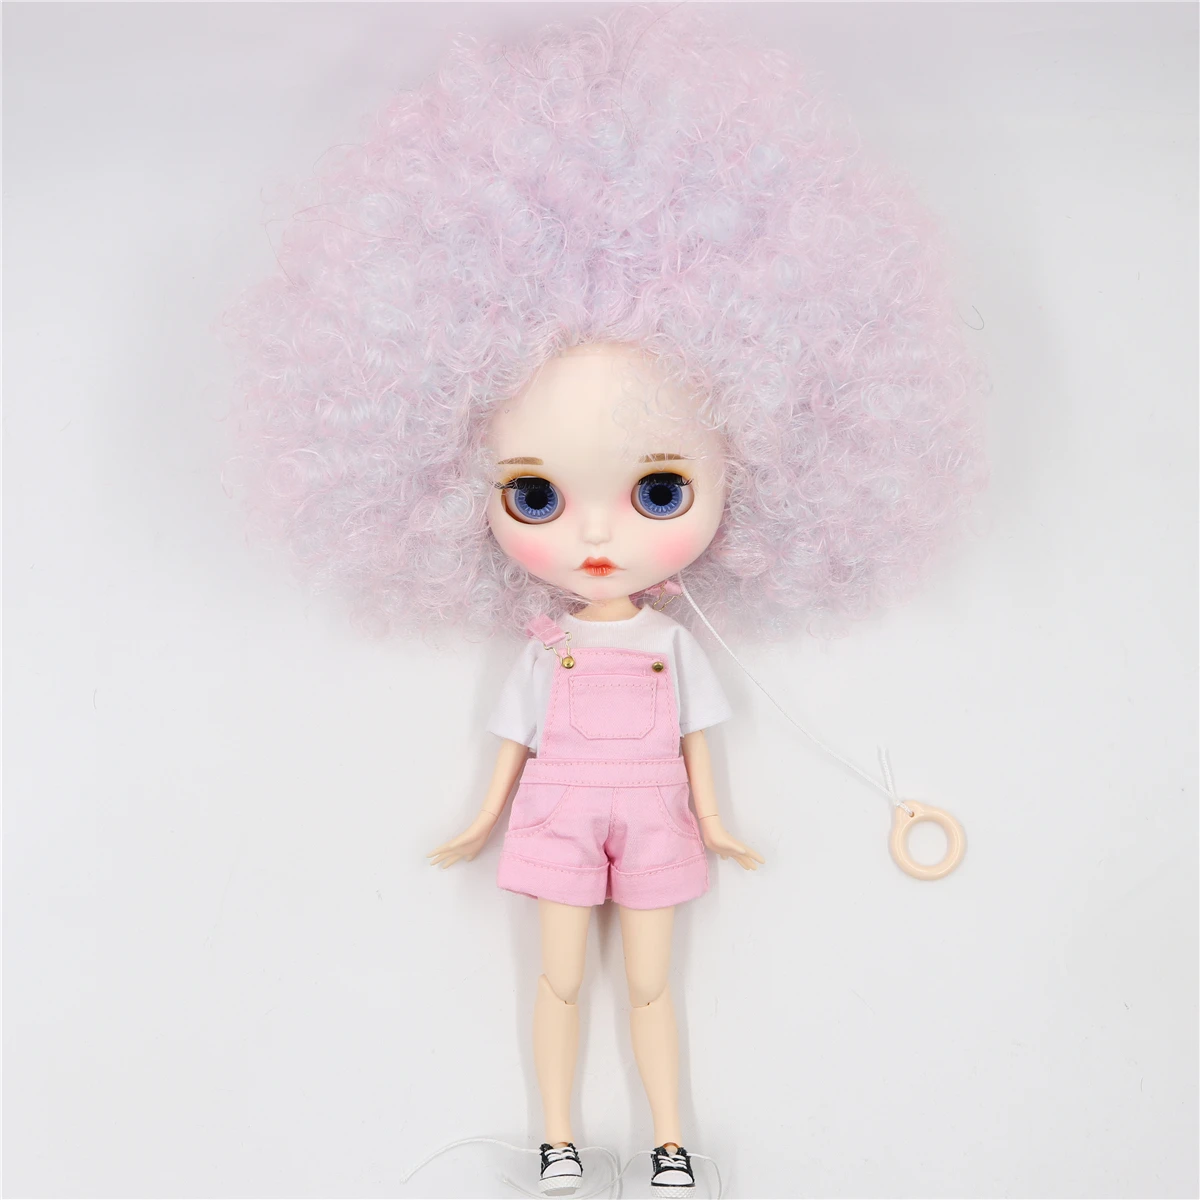 Ледяная фабрика blyth кукла 1/6 BJD шарнир тело бледно-фиолетовые вьющиеся волосы, BL6909/QE126107 30 см